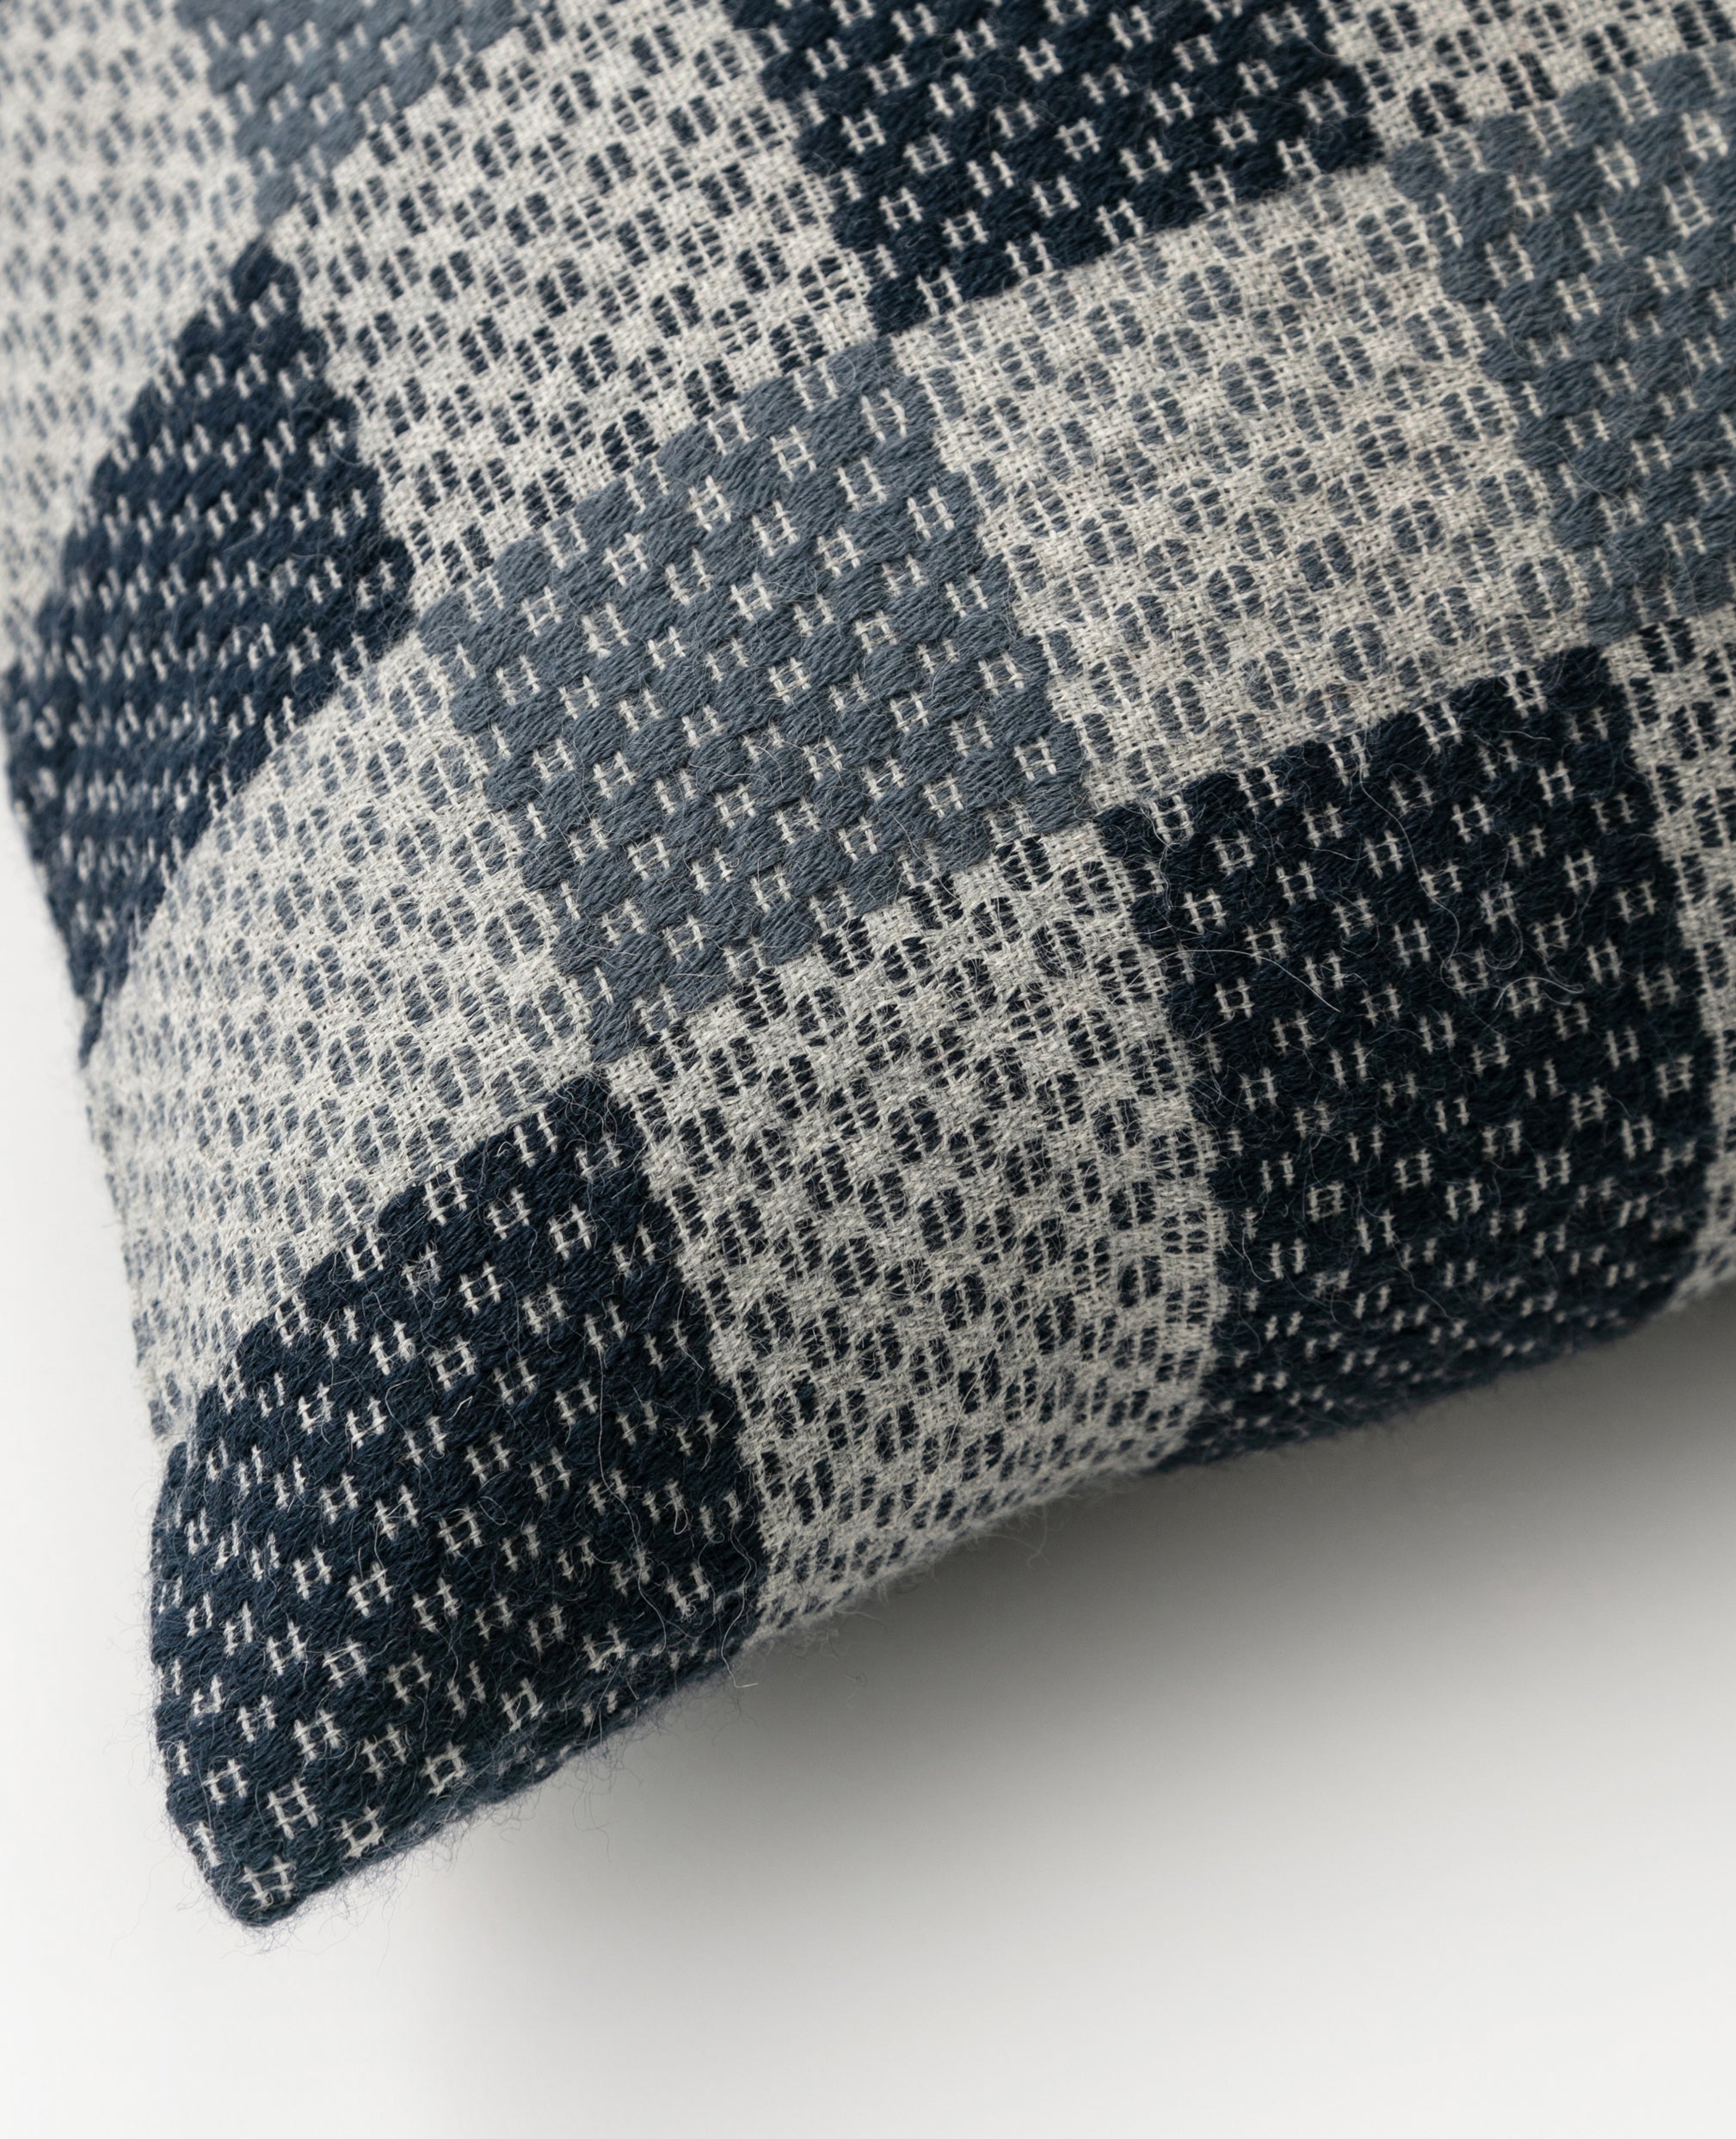 Kin overshot cushion detail